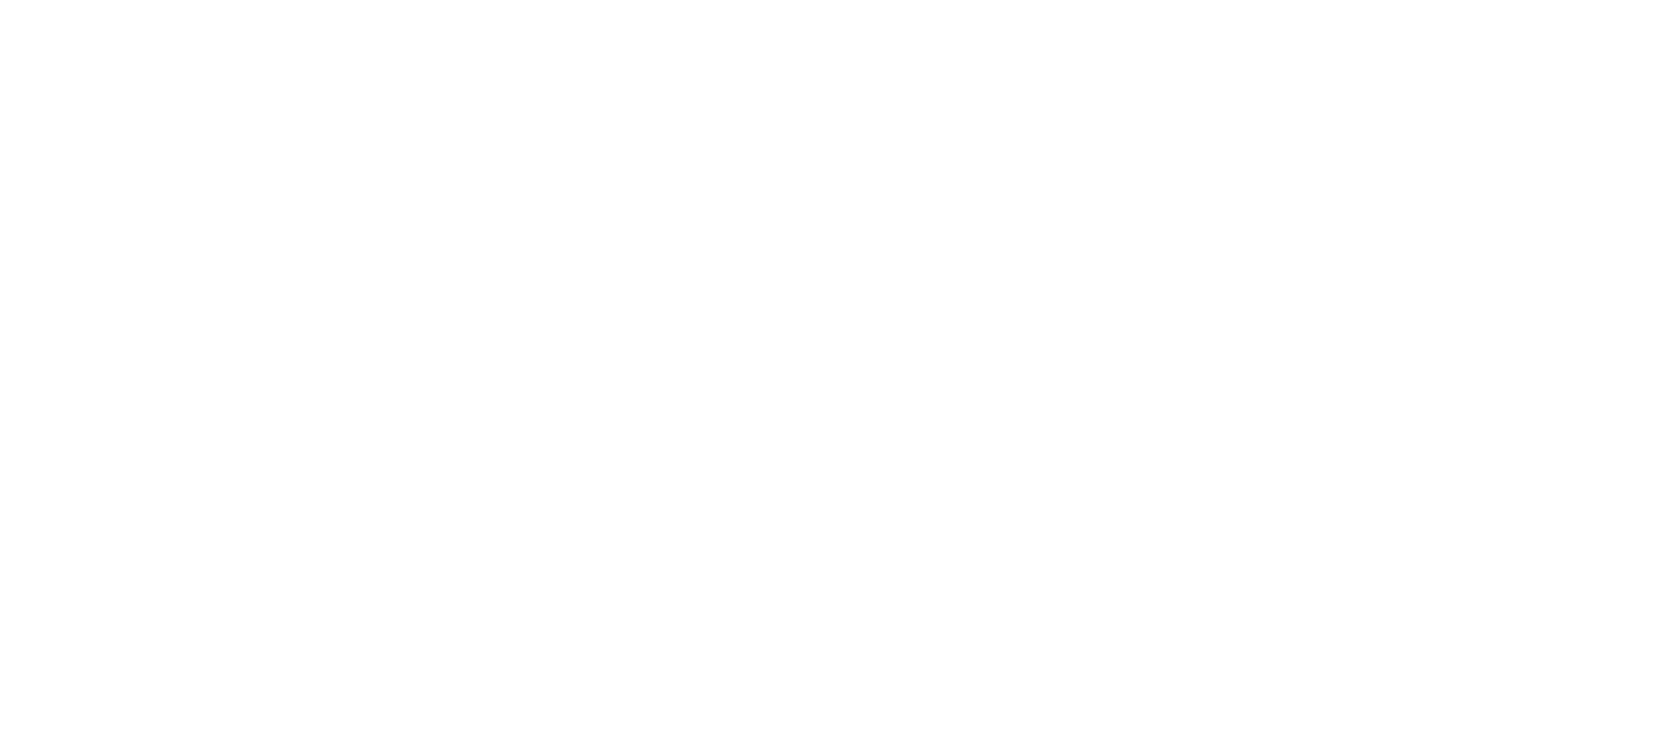 Miljonlotteriets bingospel Tissel & Tassel